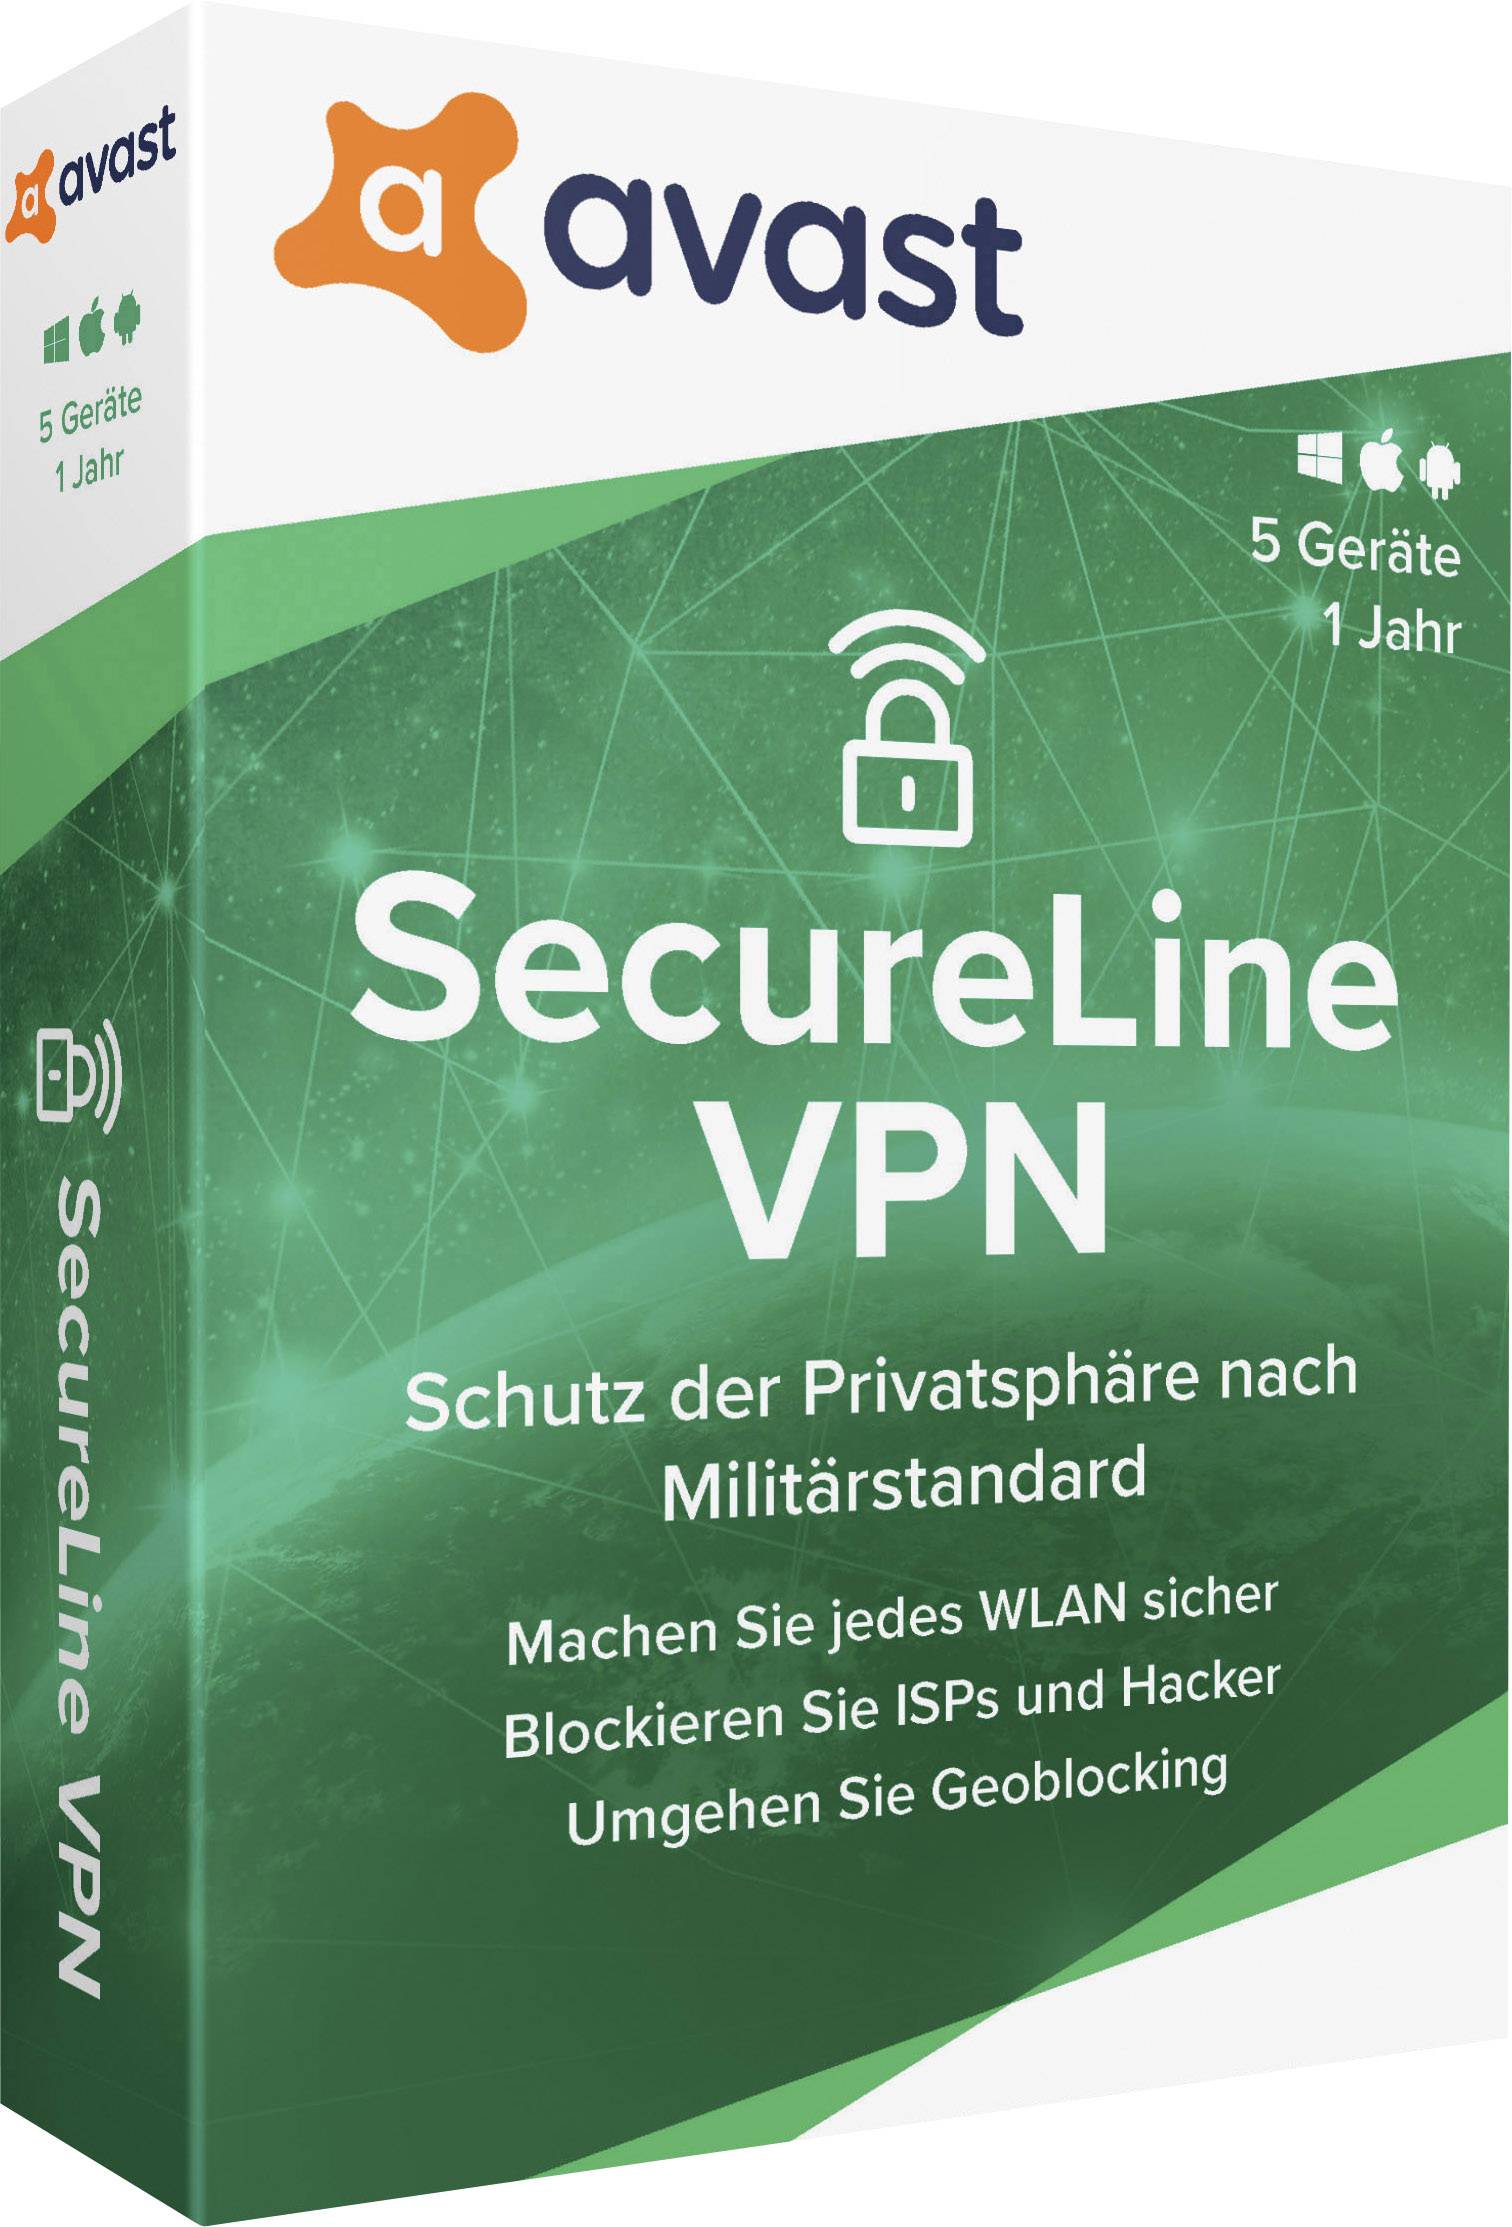 secureline vpn license for 2 years